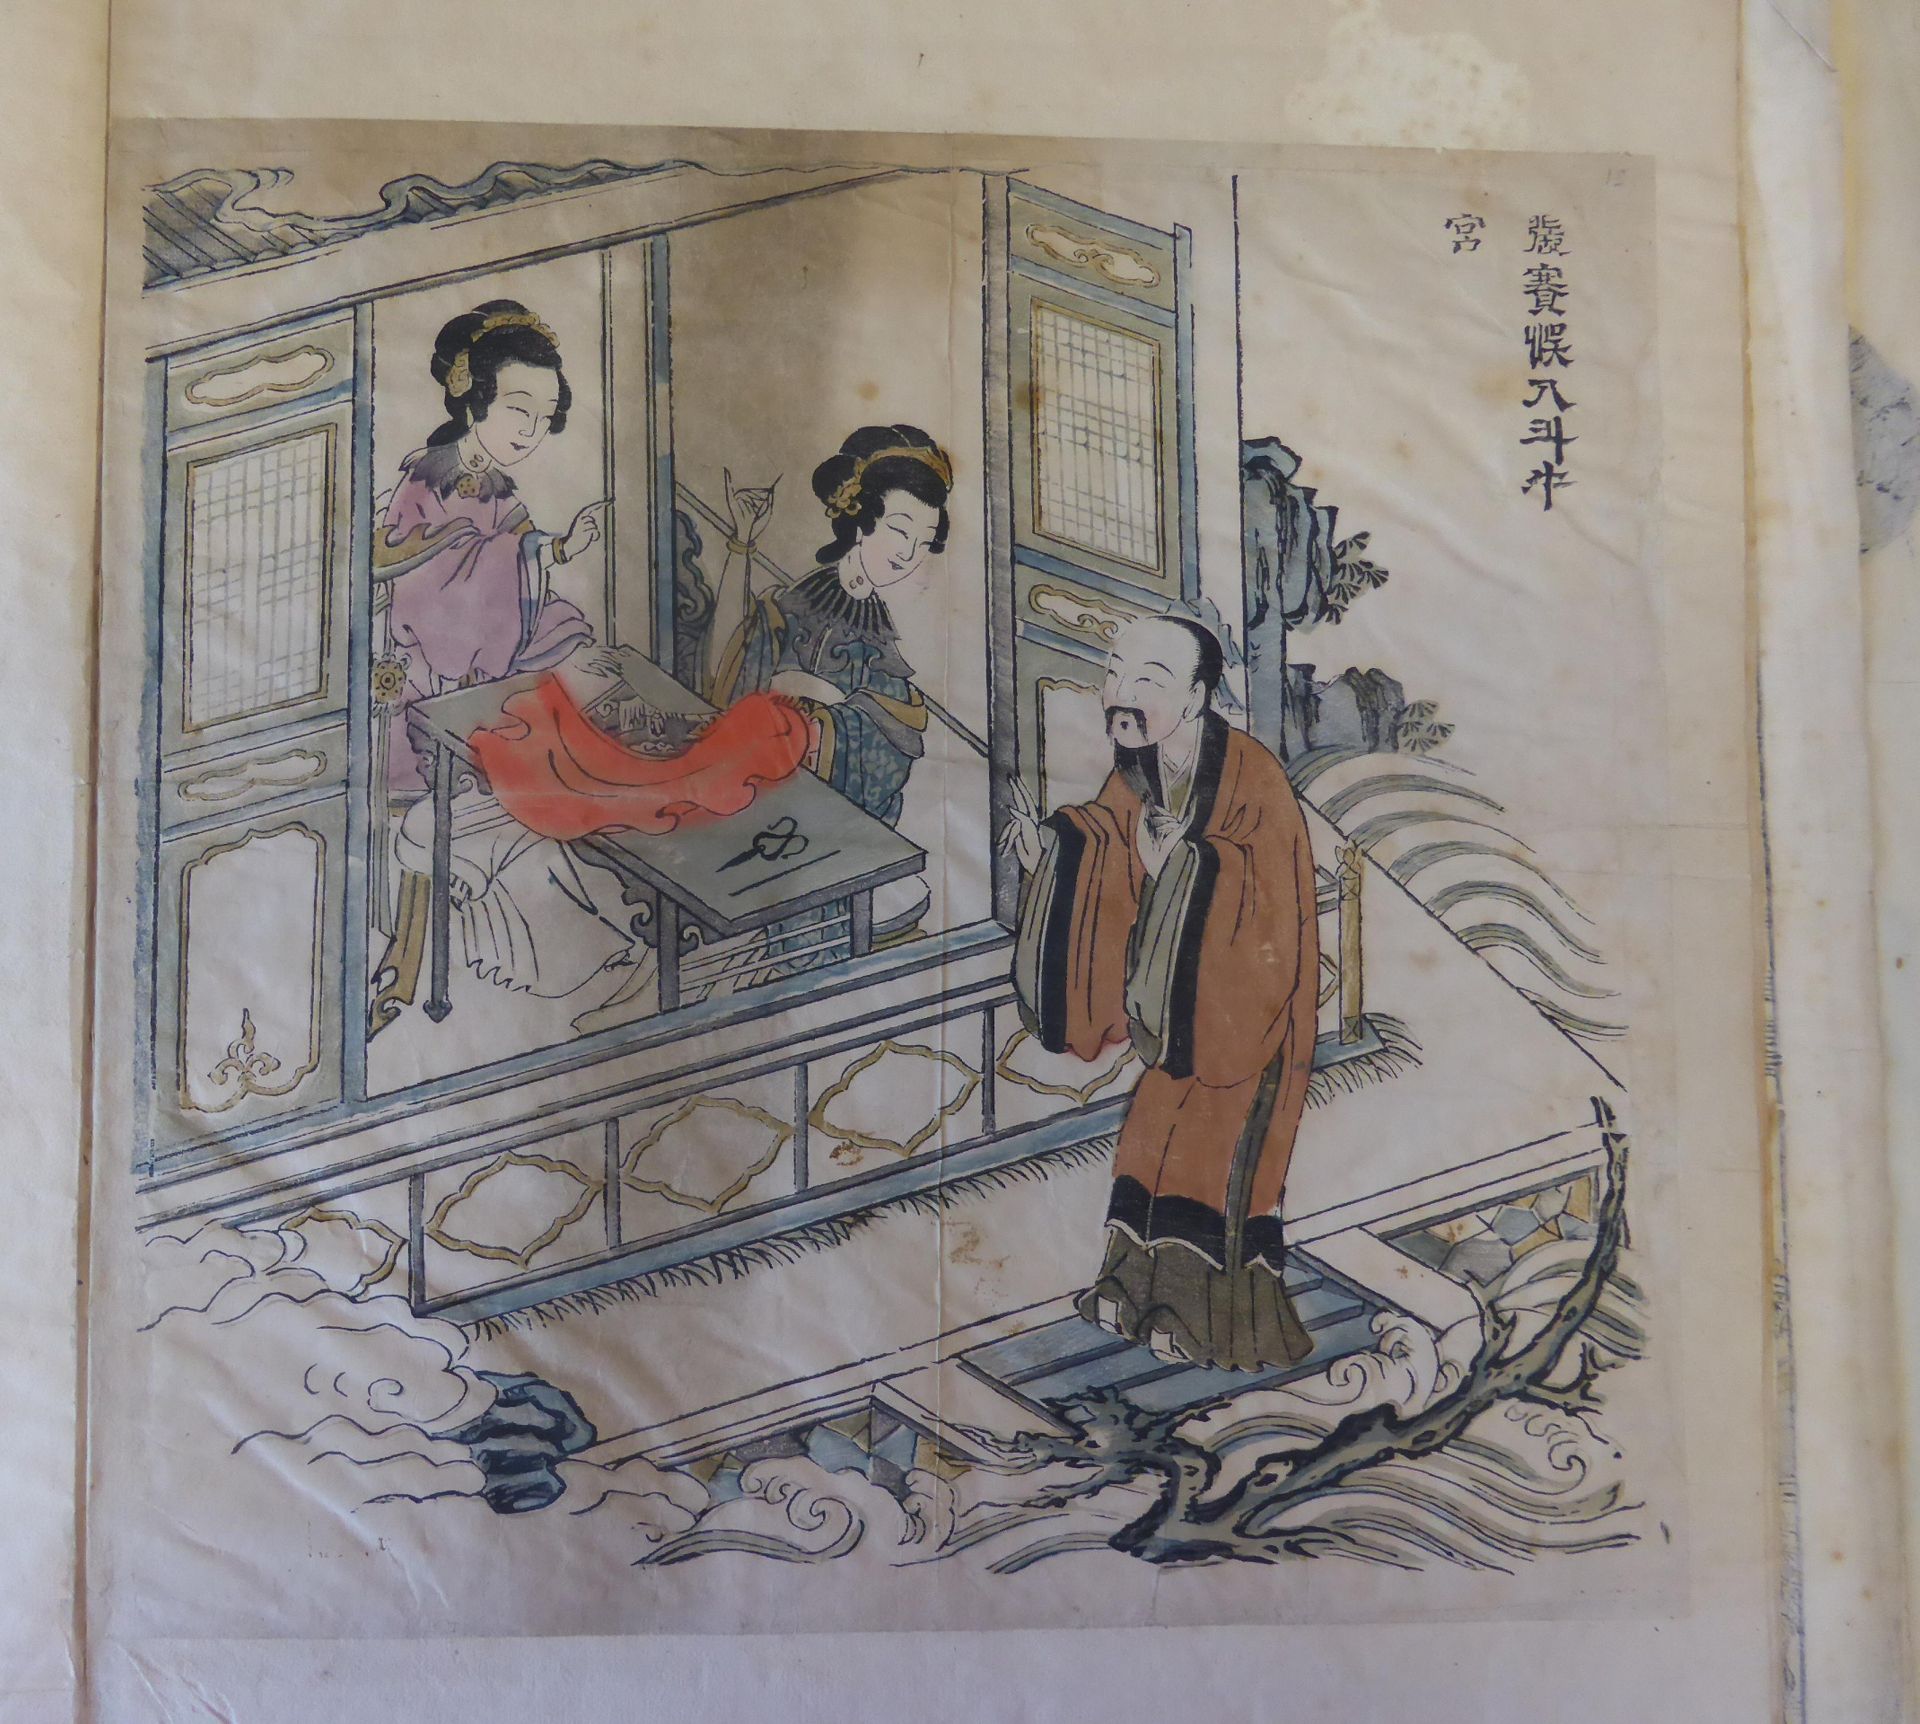 SECHS HOLZSCHNITTE IN ZWEI HEFTEN. China. Qing-Dynastie. 18. Jh. Farbholzschnitte mit bis zu - Bild 4 aus 5